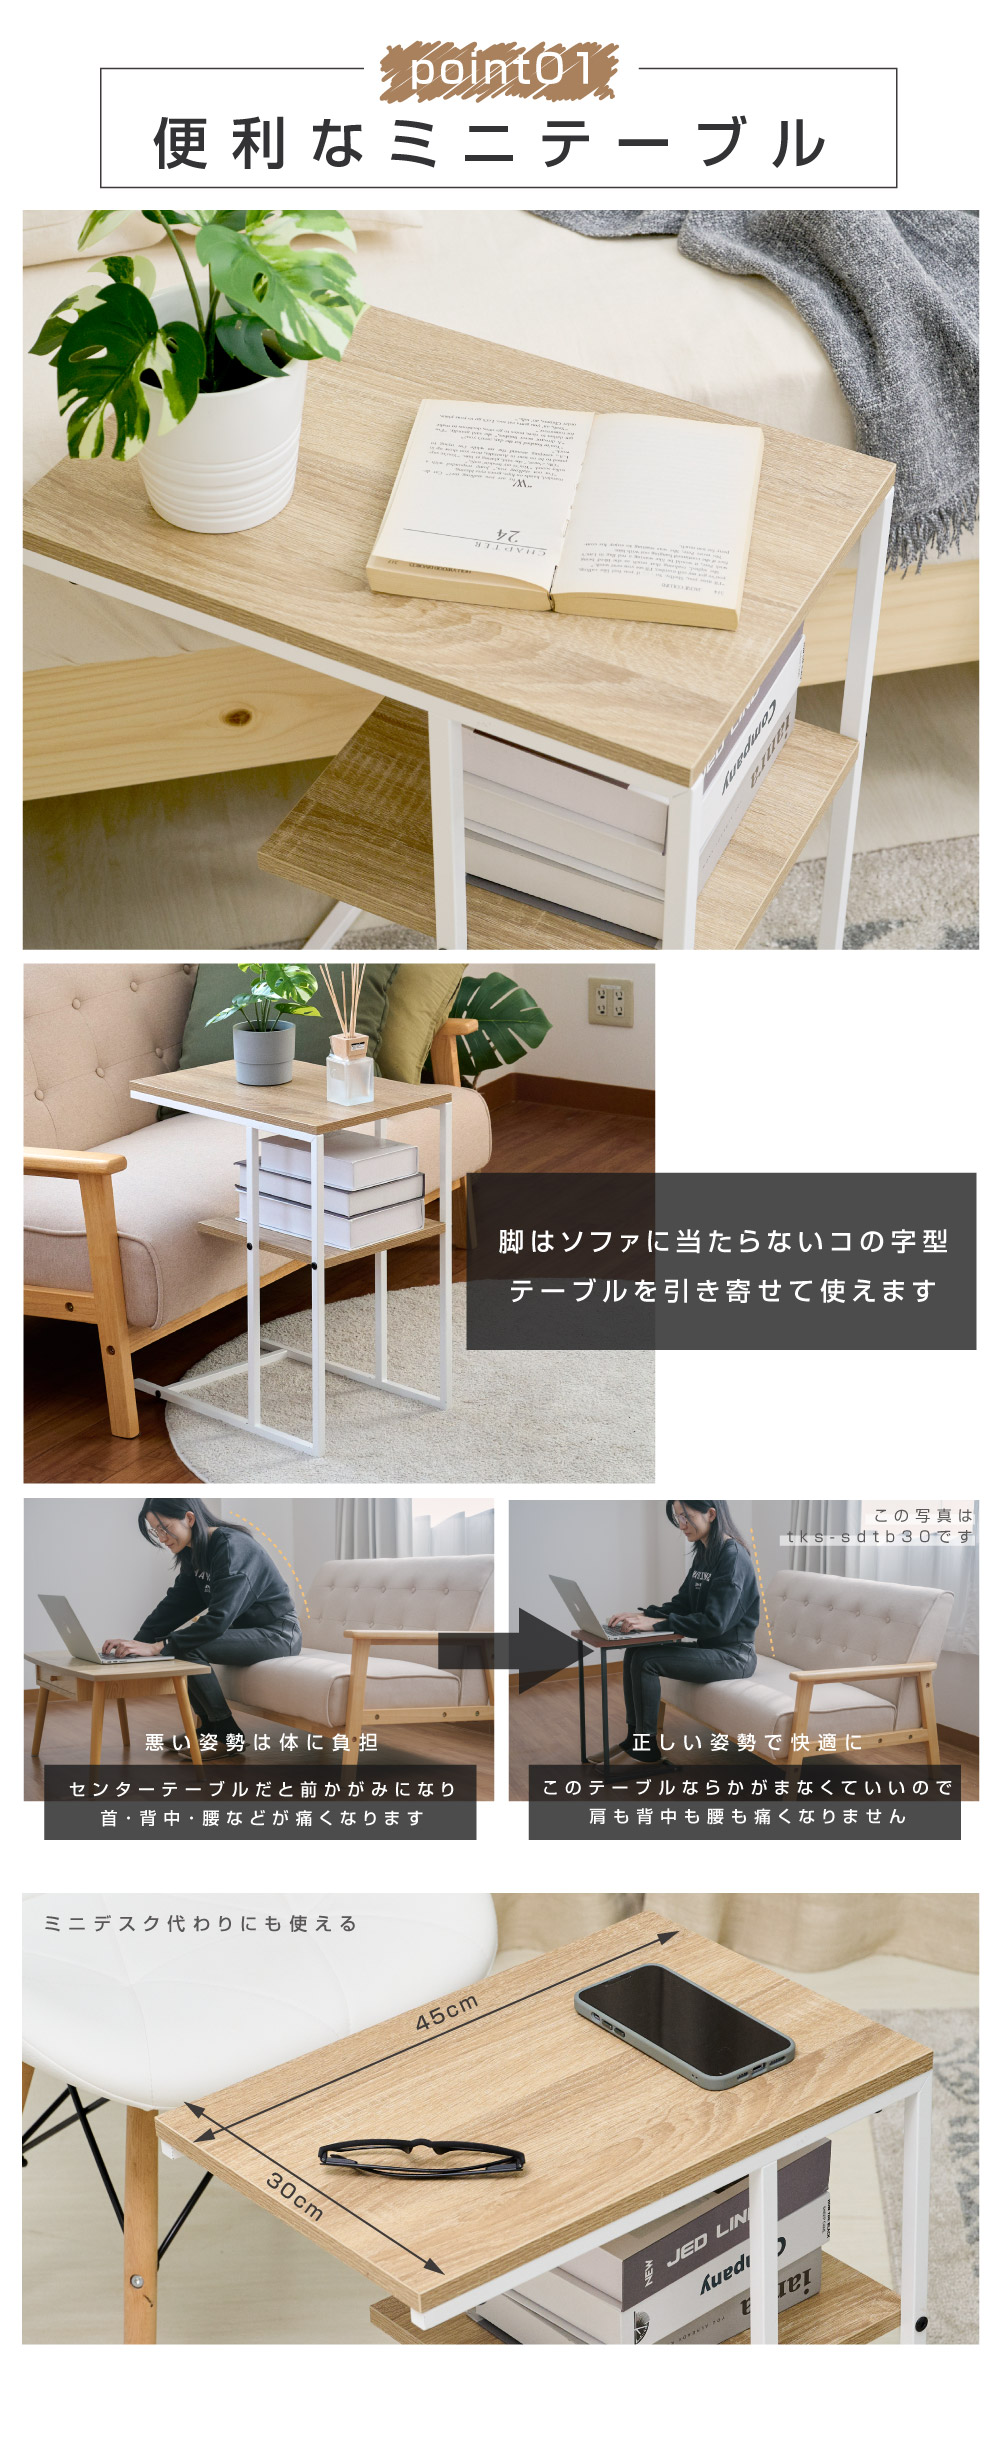 日本製 テーブル サイドテーブル コの字型 木目調 ミニテーブル コーヒーテーブル カフェテーブル 幅45.5×奥行30×高さ55cm 簡単組立  多機能 家具 tks-sdtb45 :tks-sdtb45:サインキングダム - 通販 - Yahoo!ショッピング